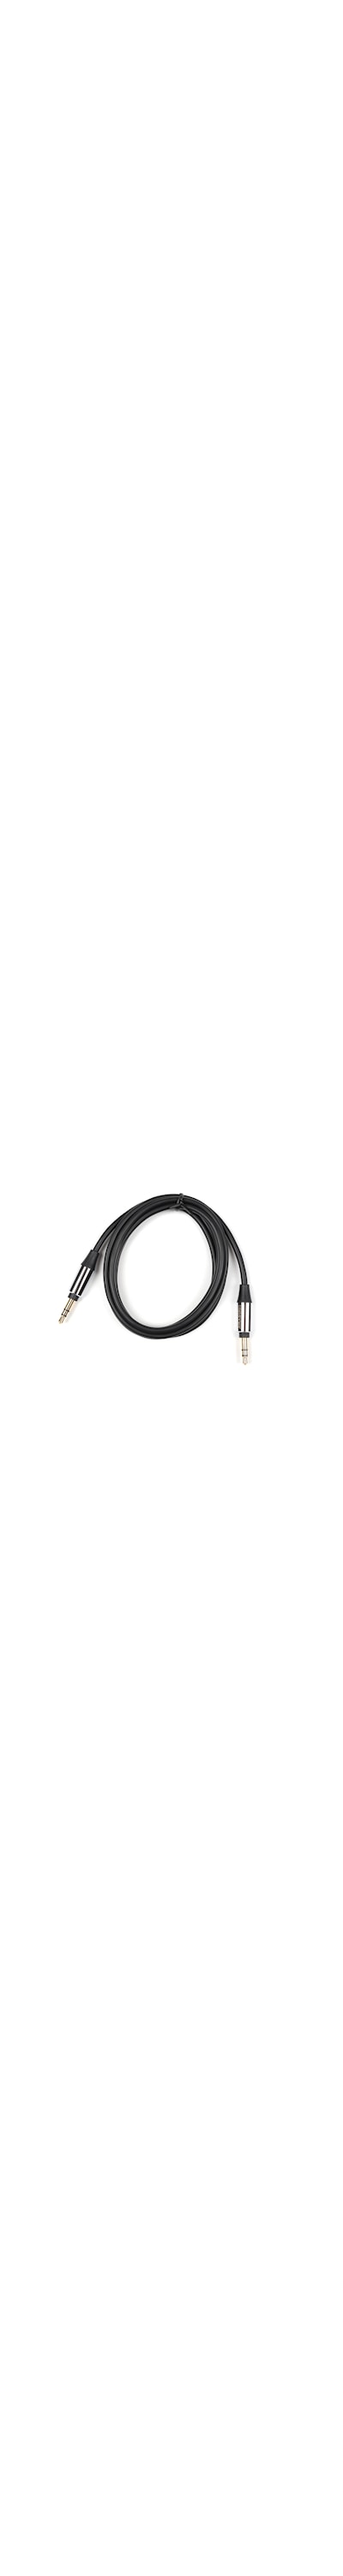 AUX kabel 3,5mm